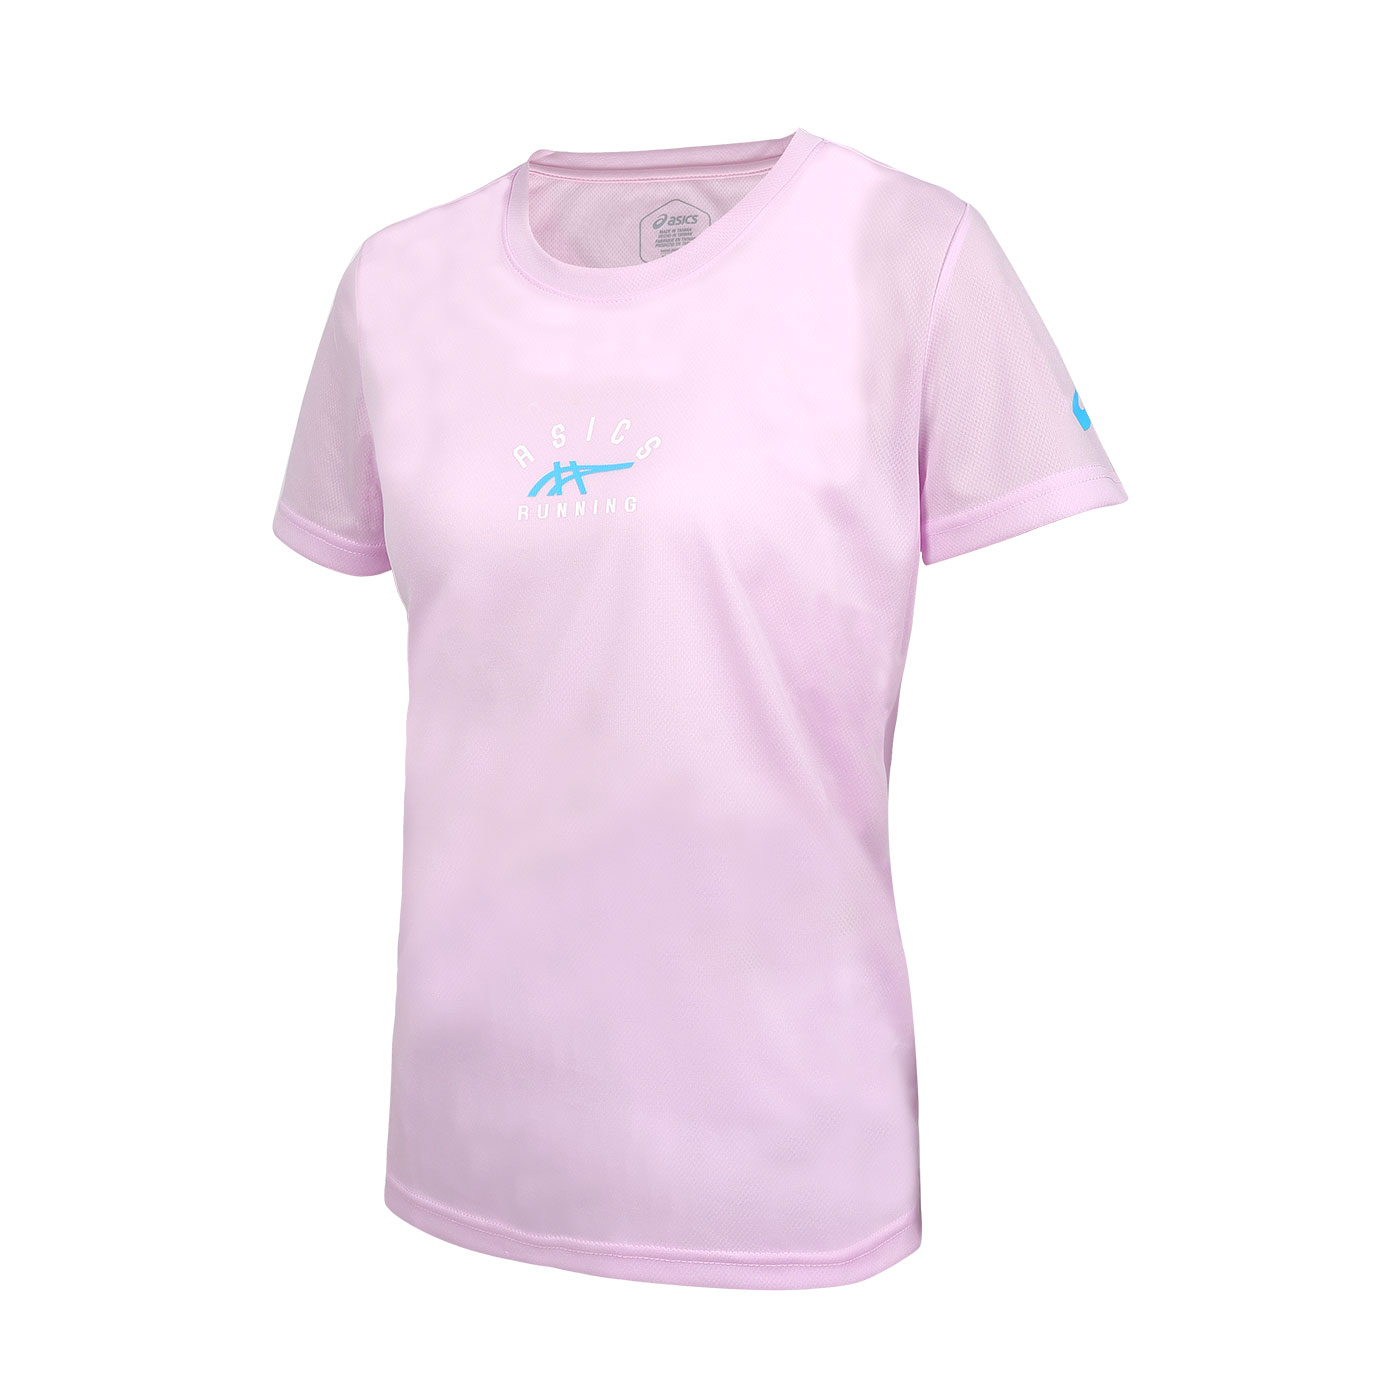 ASICS 女款短袖T恤  2012D104-500 - 粉紅白藍